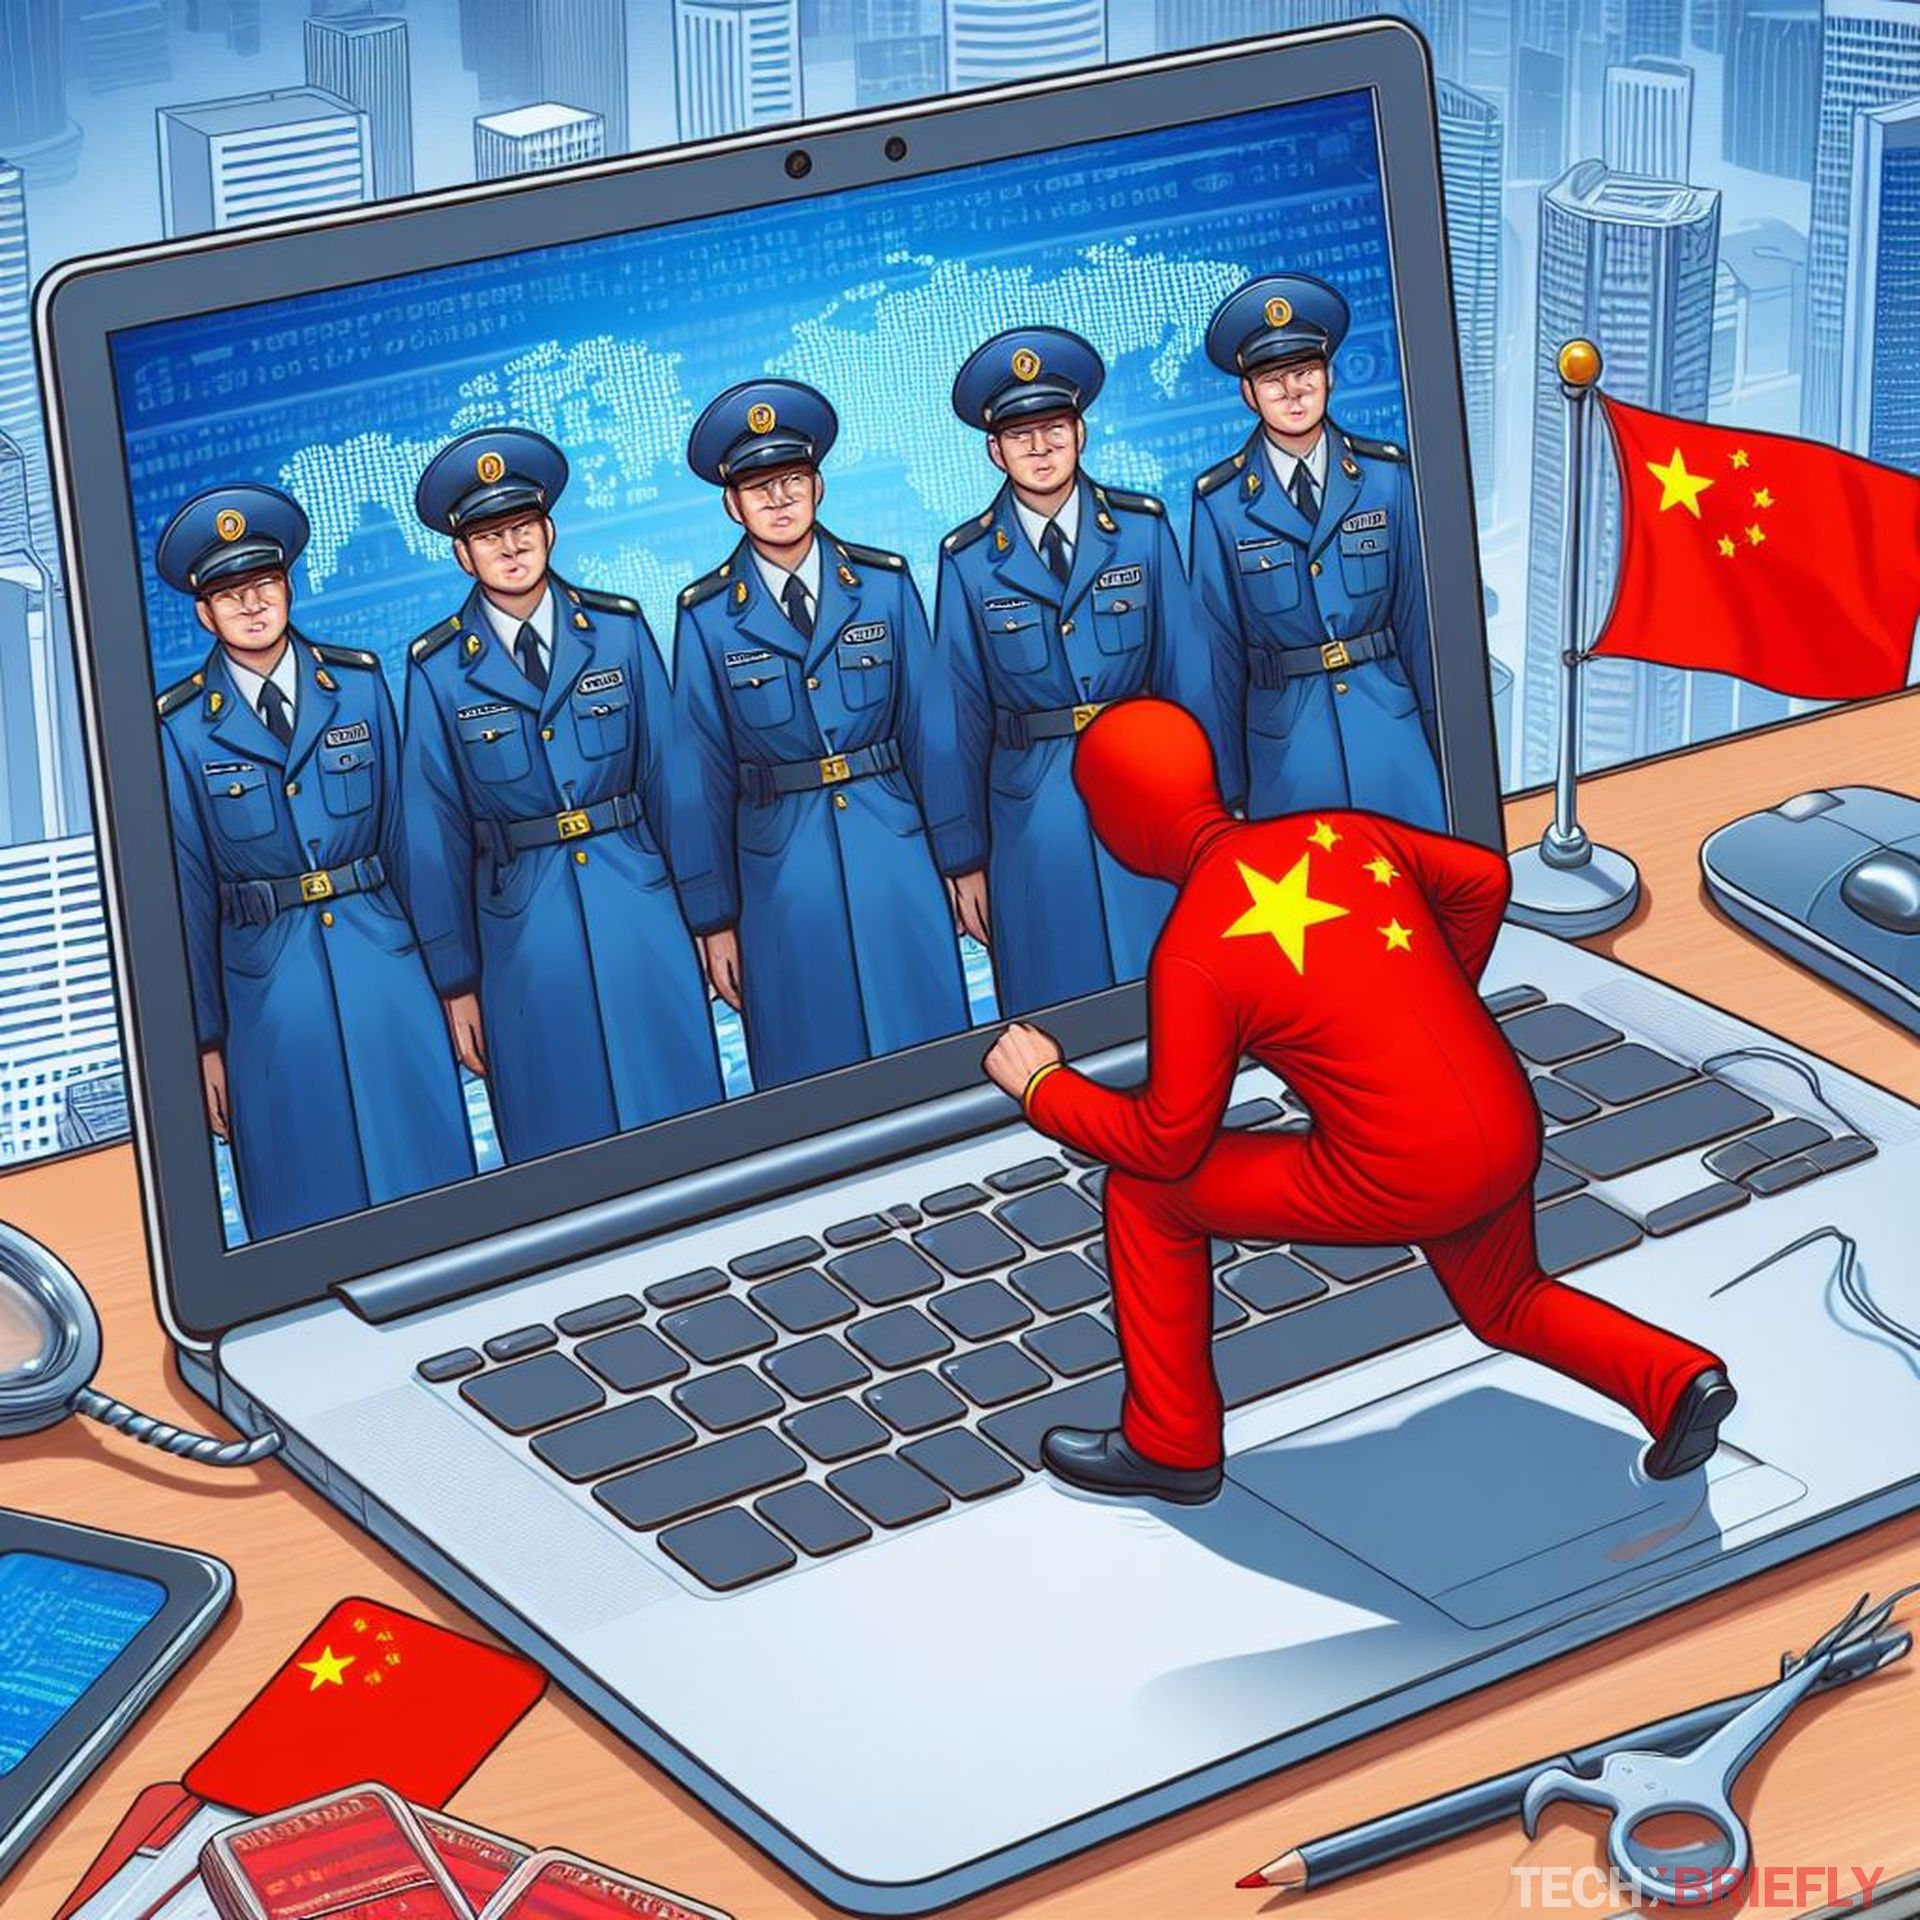 중국 인터넷 스파이가 중요한 데이터를 훔치기 위해 디지털 잠금 장치를 노리고 있습니다.